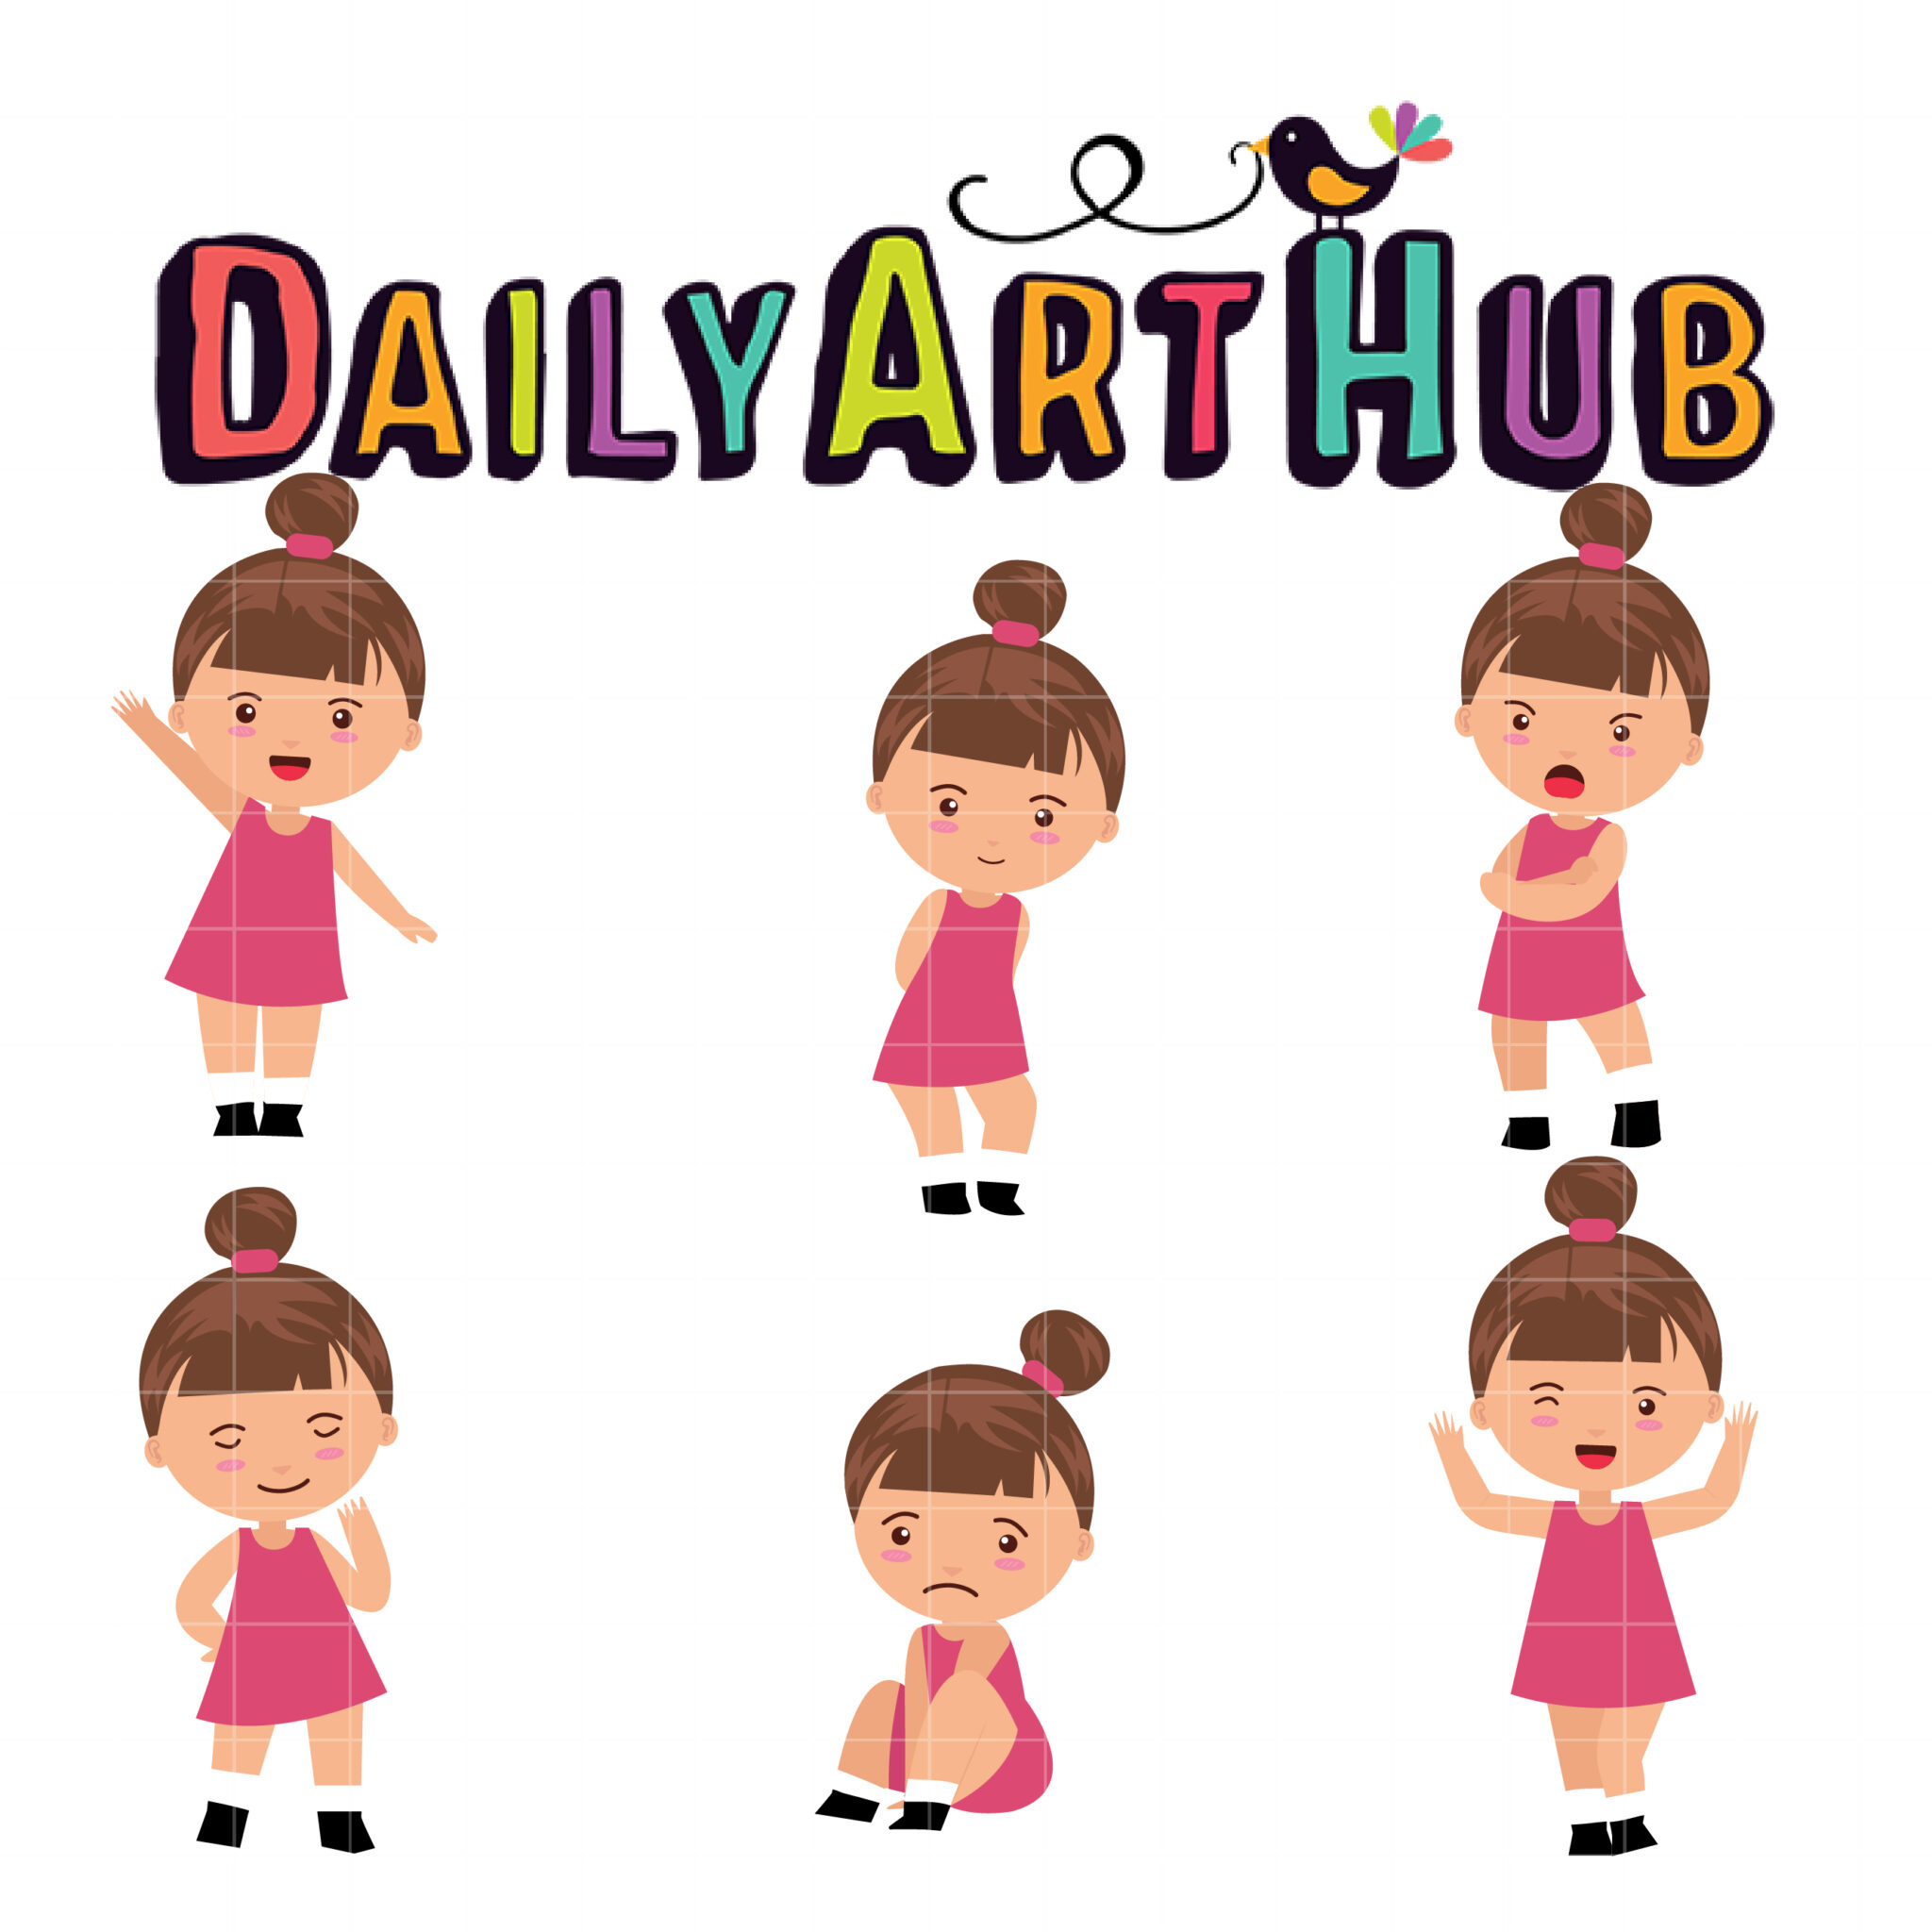 https://www.dailyarthub.com/wp-content/uploads/2021/02/Girl-Little-Bun-Girl-scaled.jpg